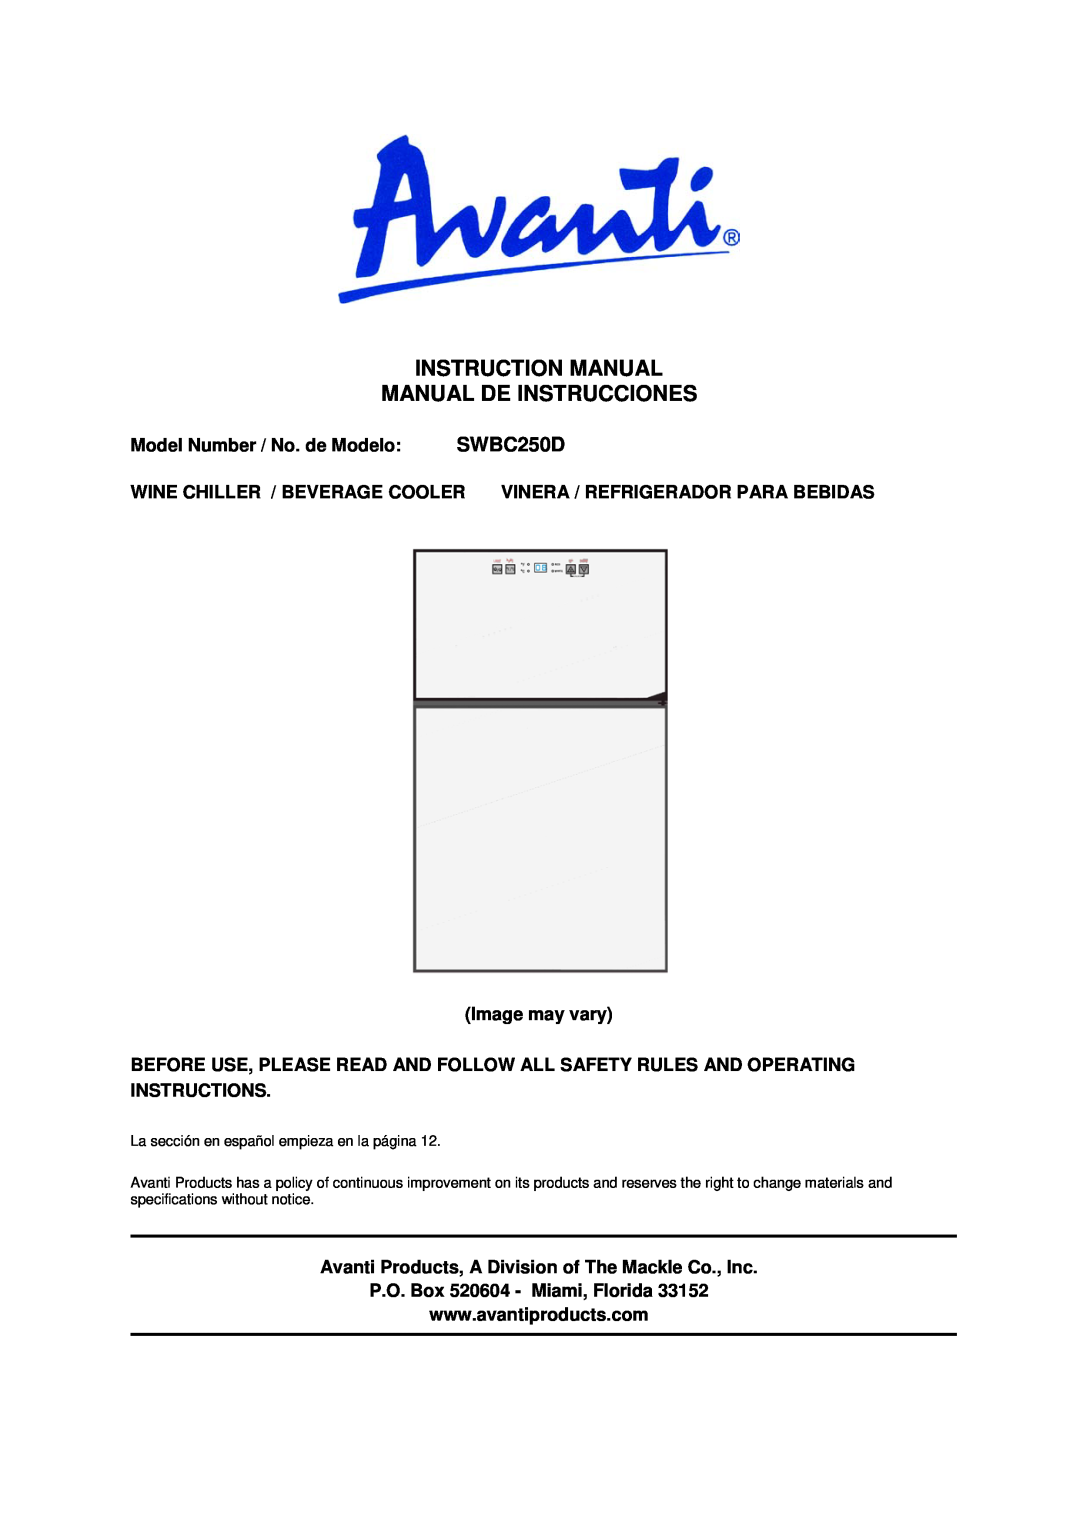 Avanti instruction manual Model Number / No. de Modelo SWBC250D, Image may vary, P.O. Box 520604 - Miami, Florida 